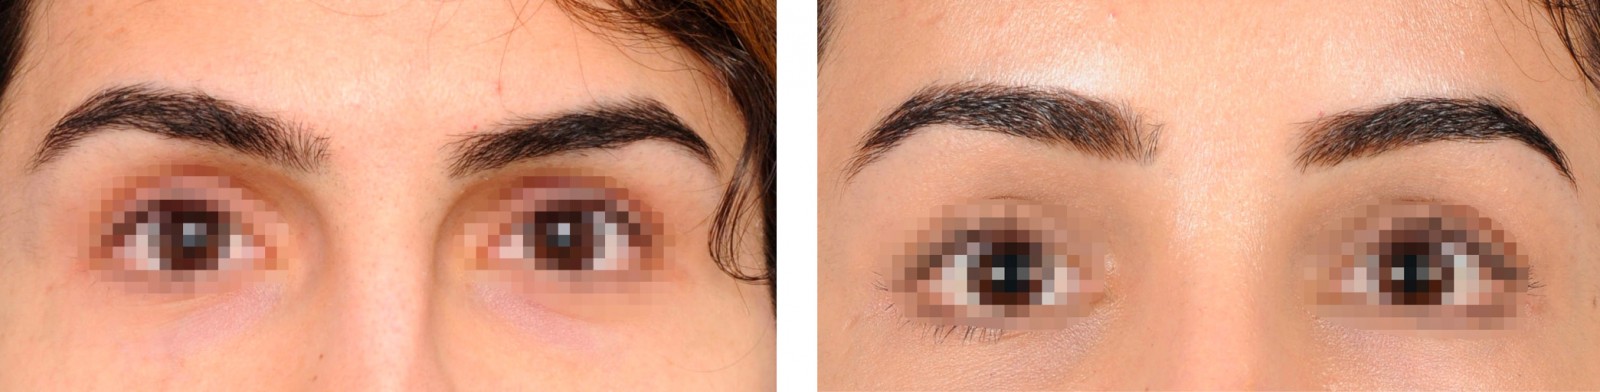 2passclinic before and after transwomen facial feminization FFS mtf antwerp brow lift